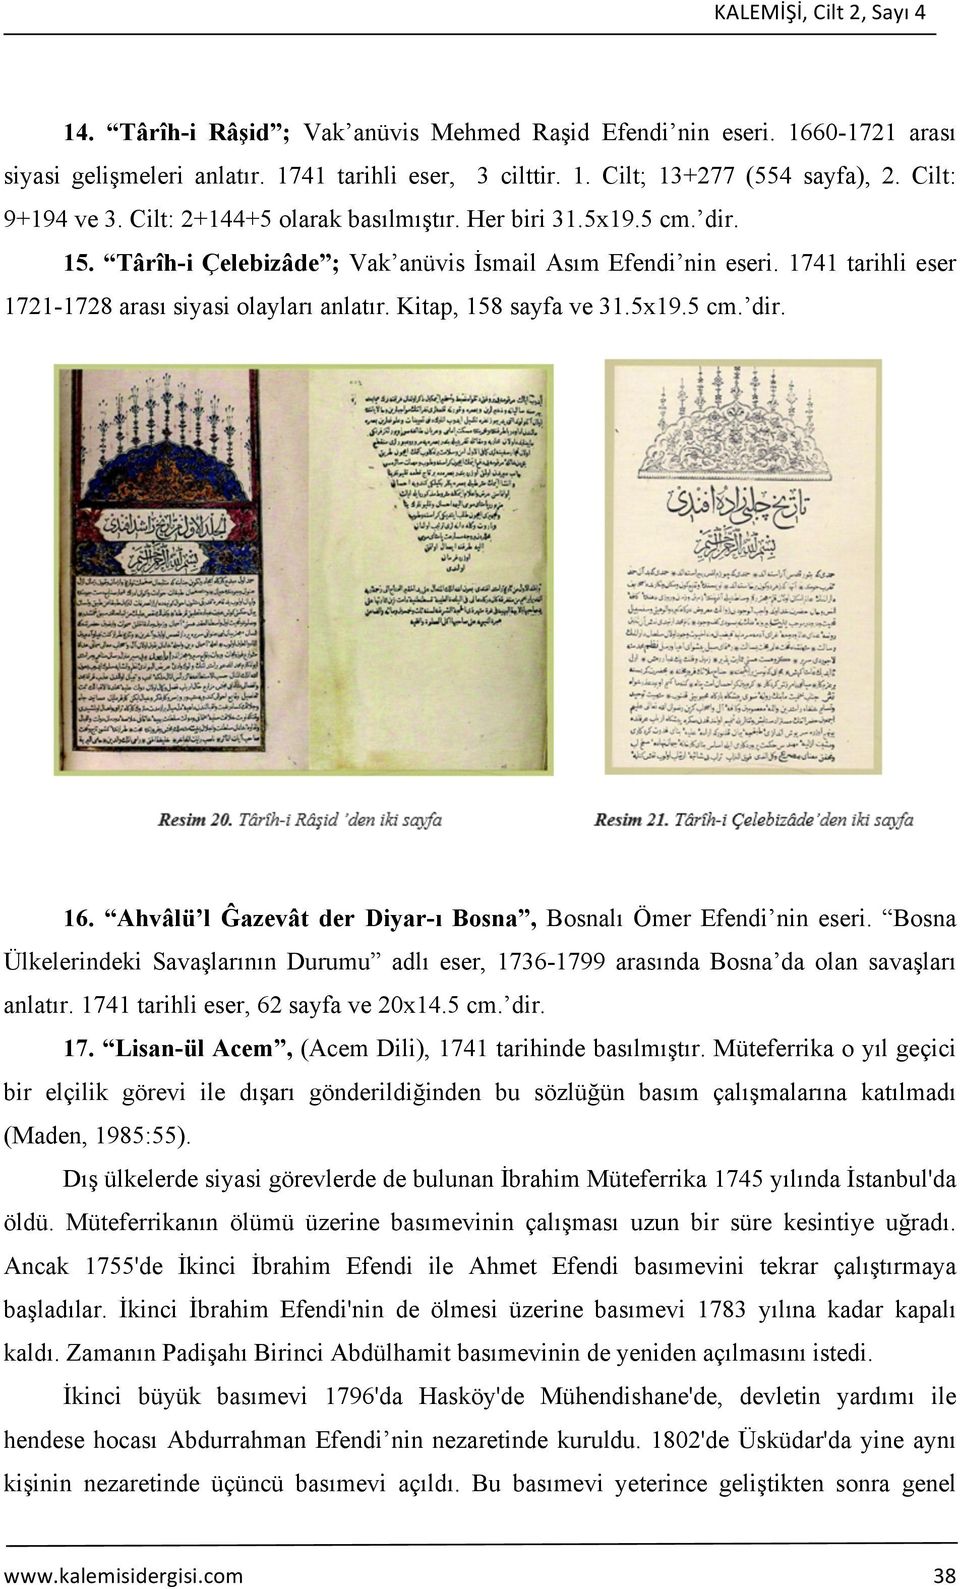 1864'de Darü't-Tıbaatü'l- Ma'mura (Devlet Basımevi) ile Takvim-i Vakayi basımevleri birleştirildi (Korkmaz, 2004:5; Maden, 1999:76).